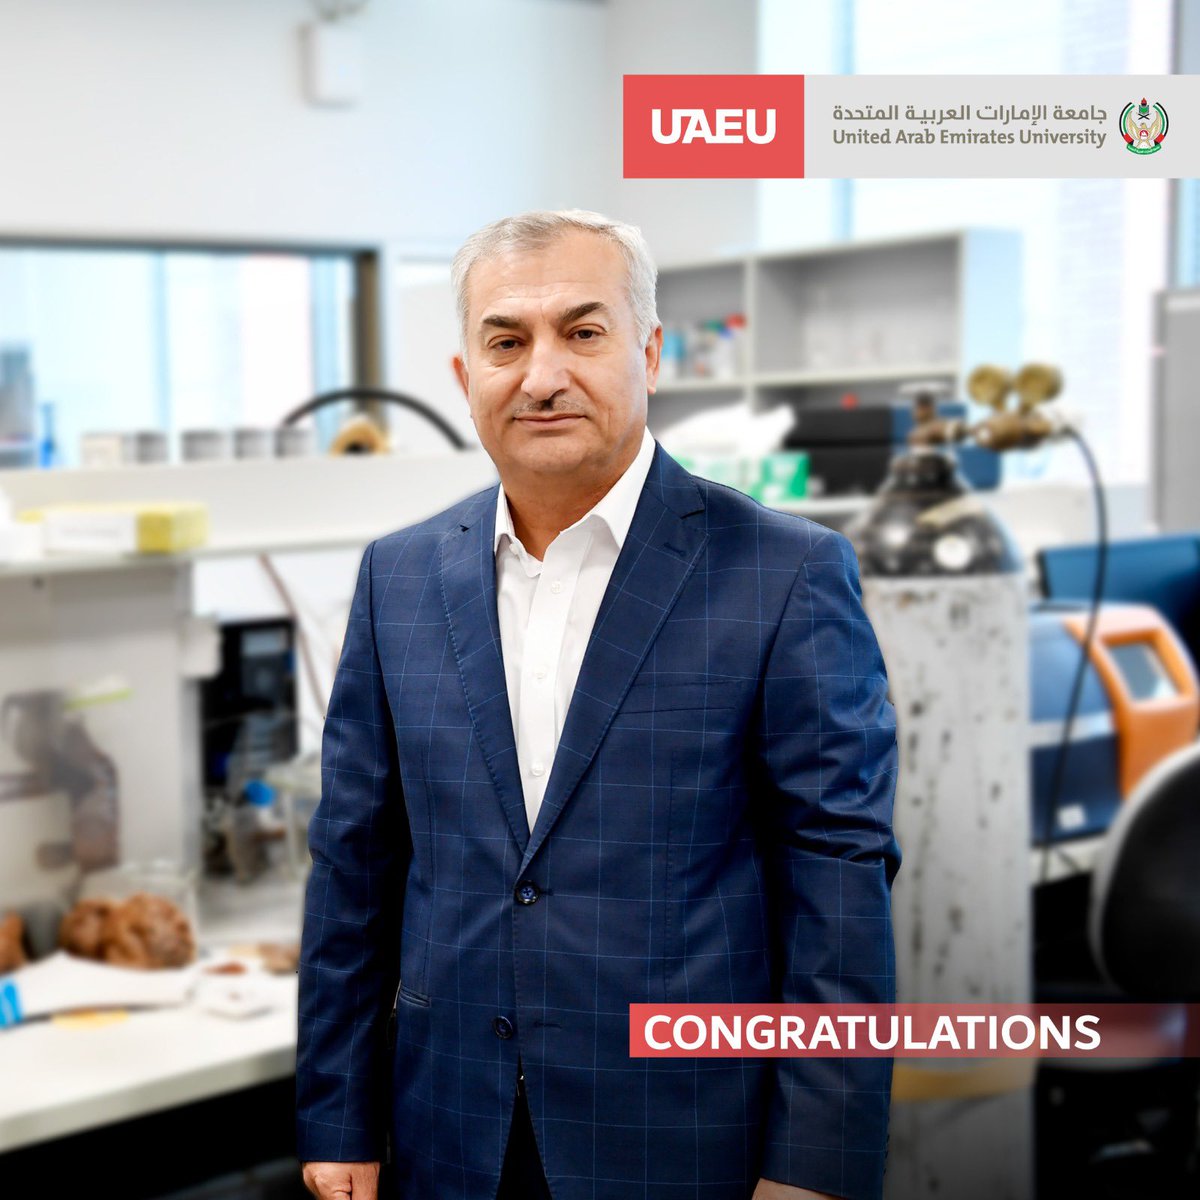 الأستاذ الدكتور باسم أبو جدايل من كلية الهندسة، يفوز بجائزة خليفة التربوية في مجال التعليم العالي، فئة الأستاذ الجامعي المتميز.